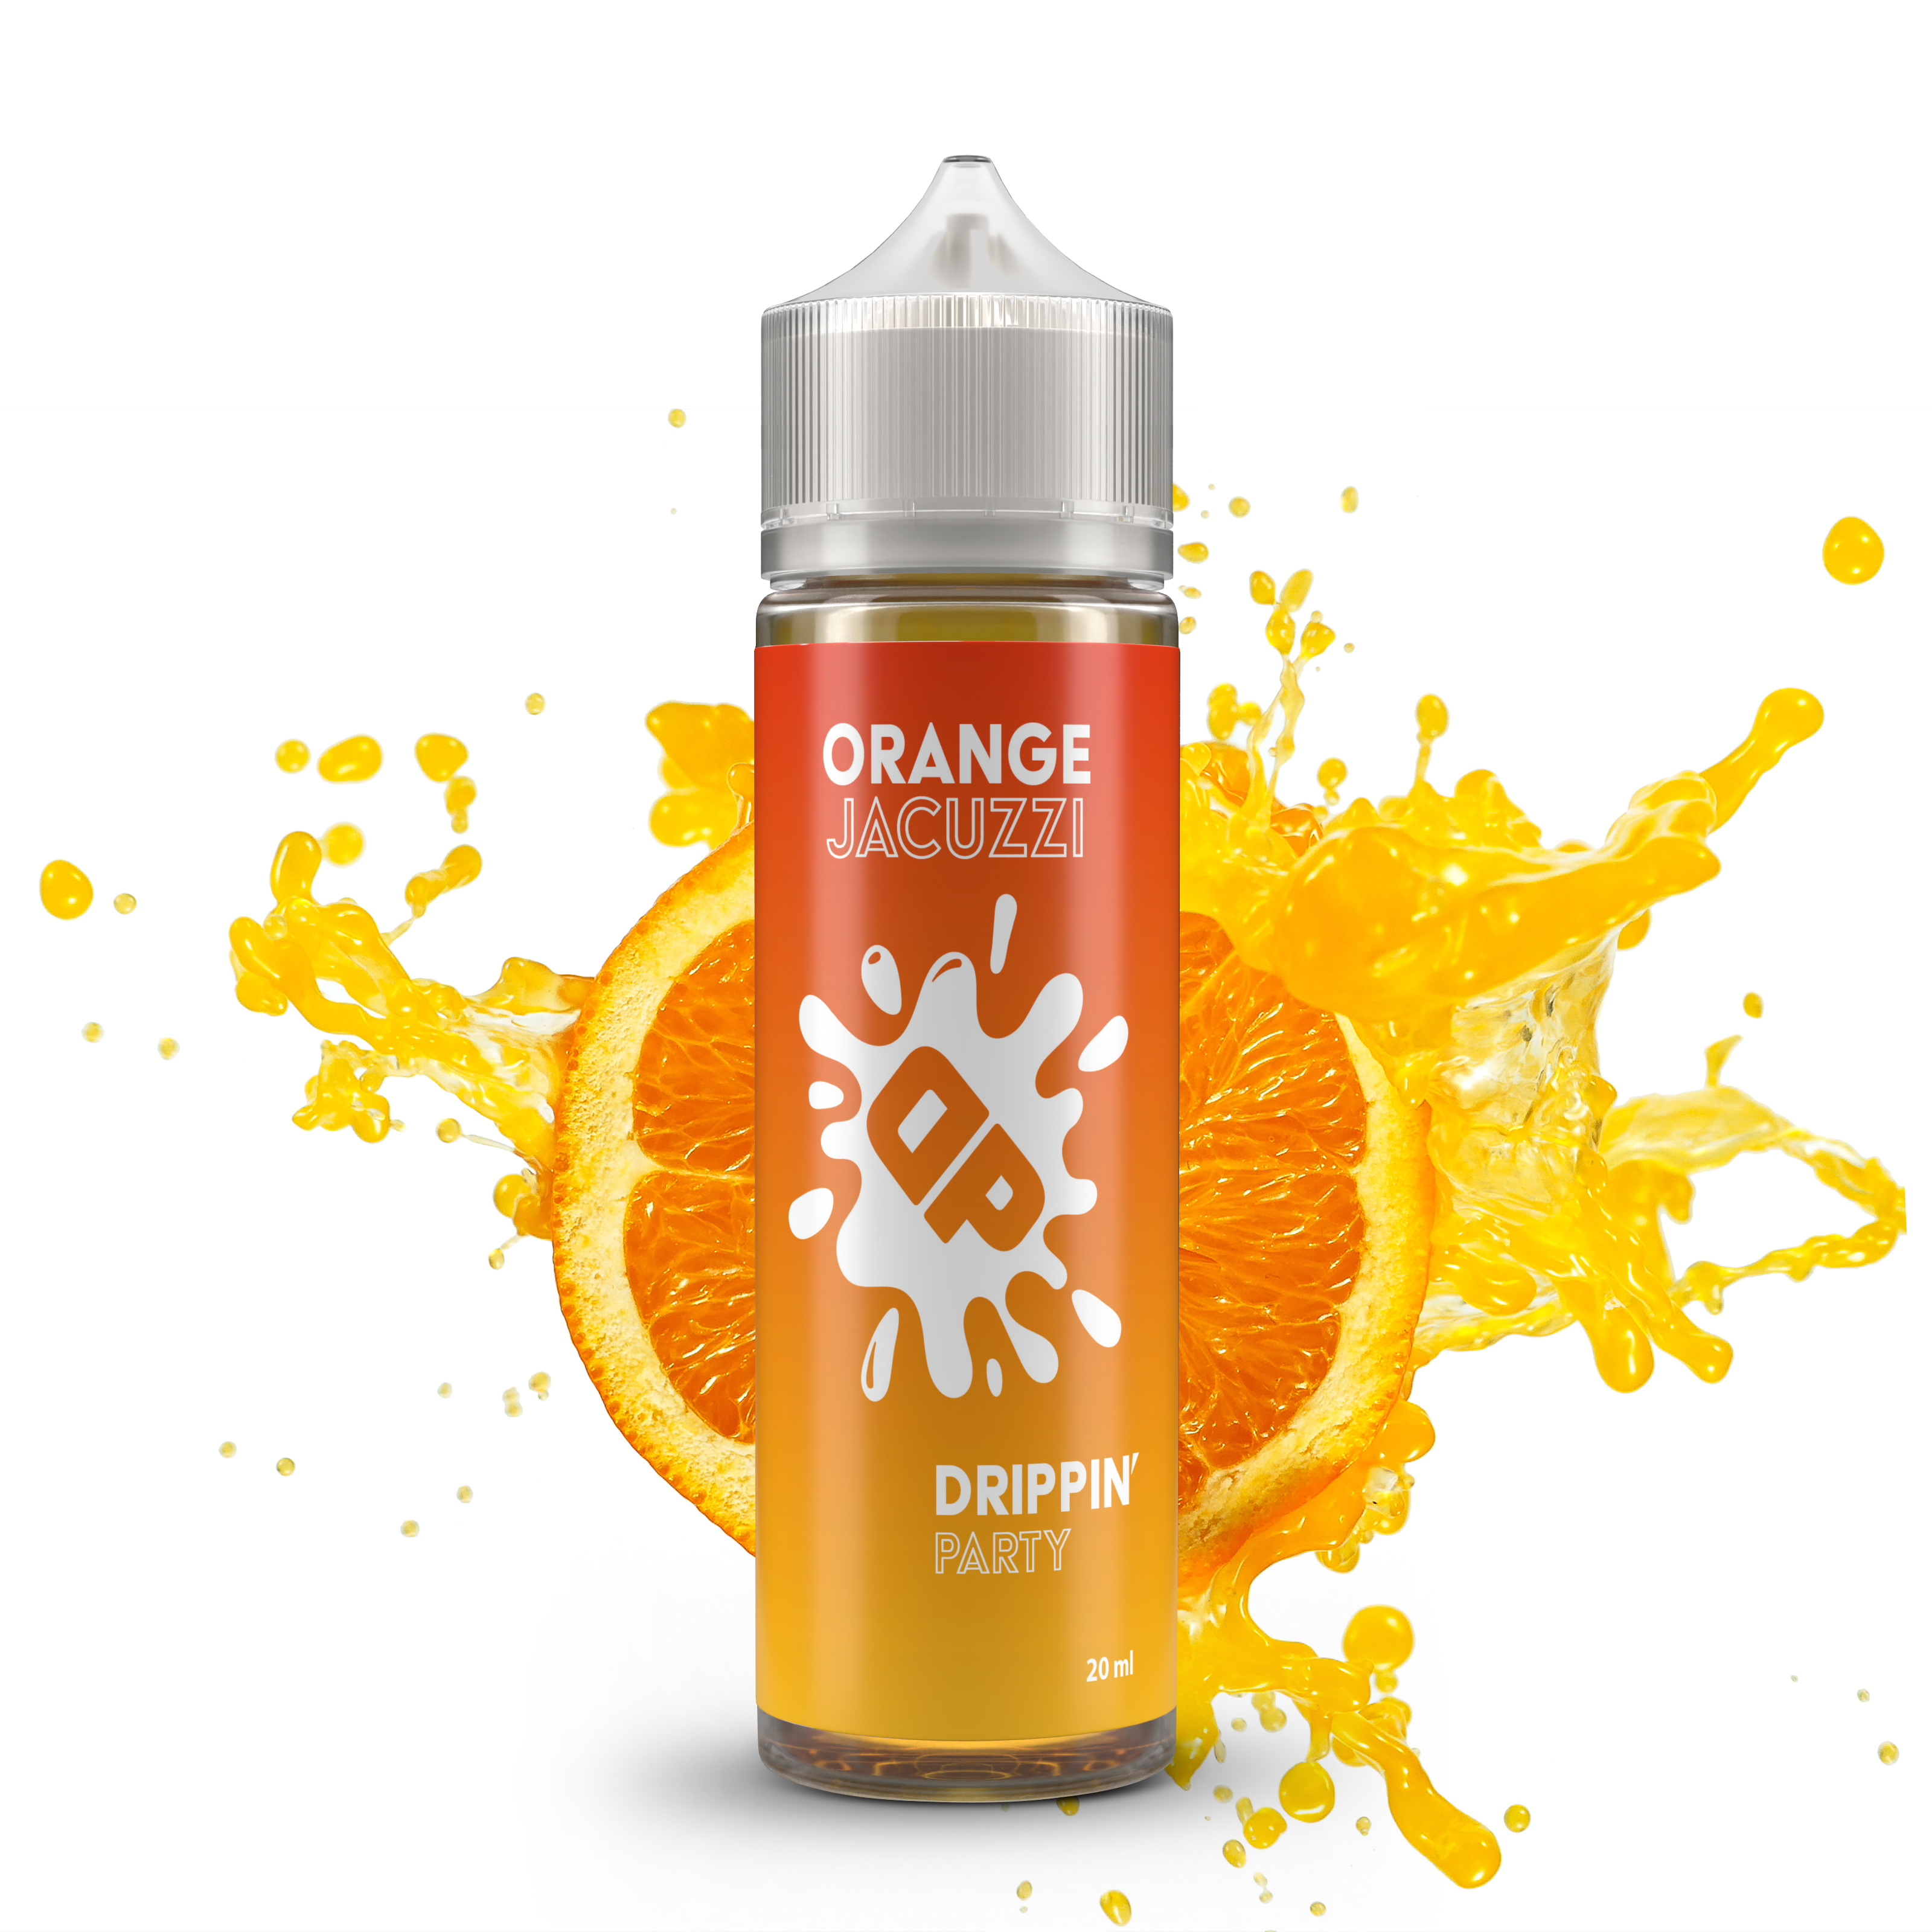 Drippin Party - Orange Jacuzzi (Pomarančové candy) Shake&Vape